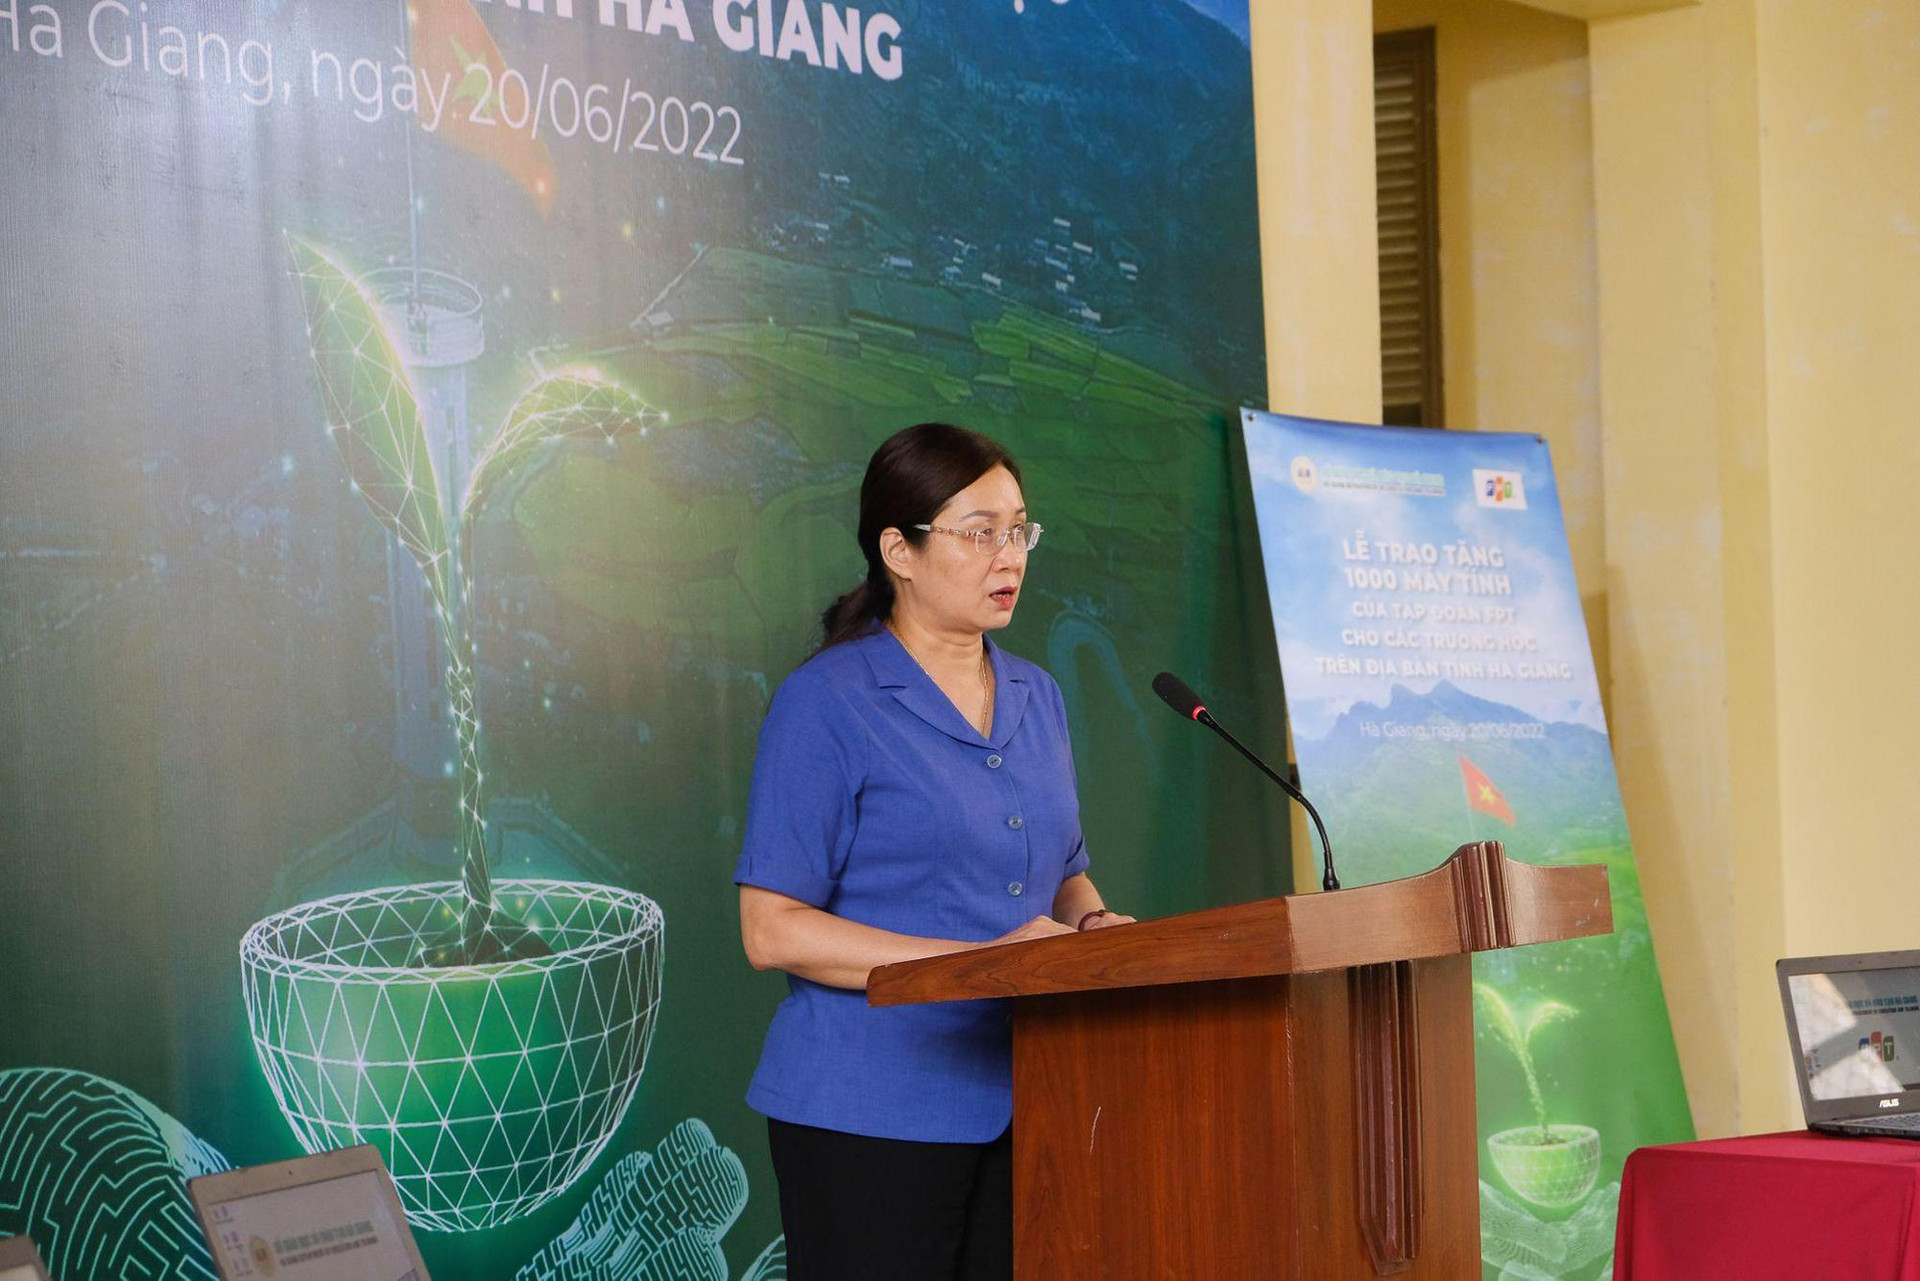 Thúc đẩy CĐS trong giáo dục. FPT trao tặng 1.000 máy tính cho học sinh tỉnh Hà Giang - Ảnh 1.